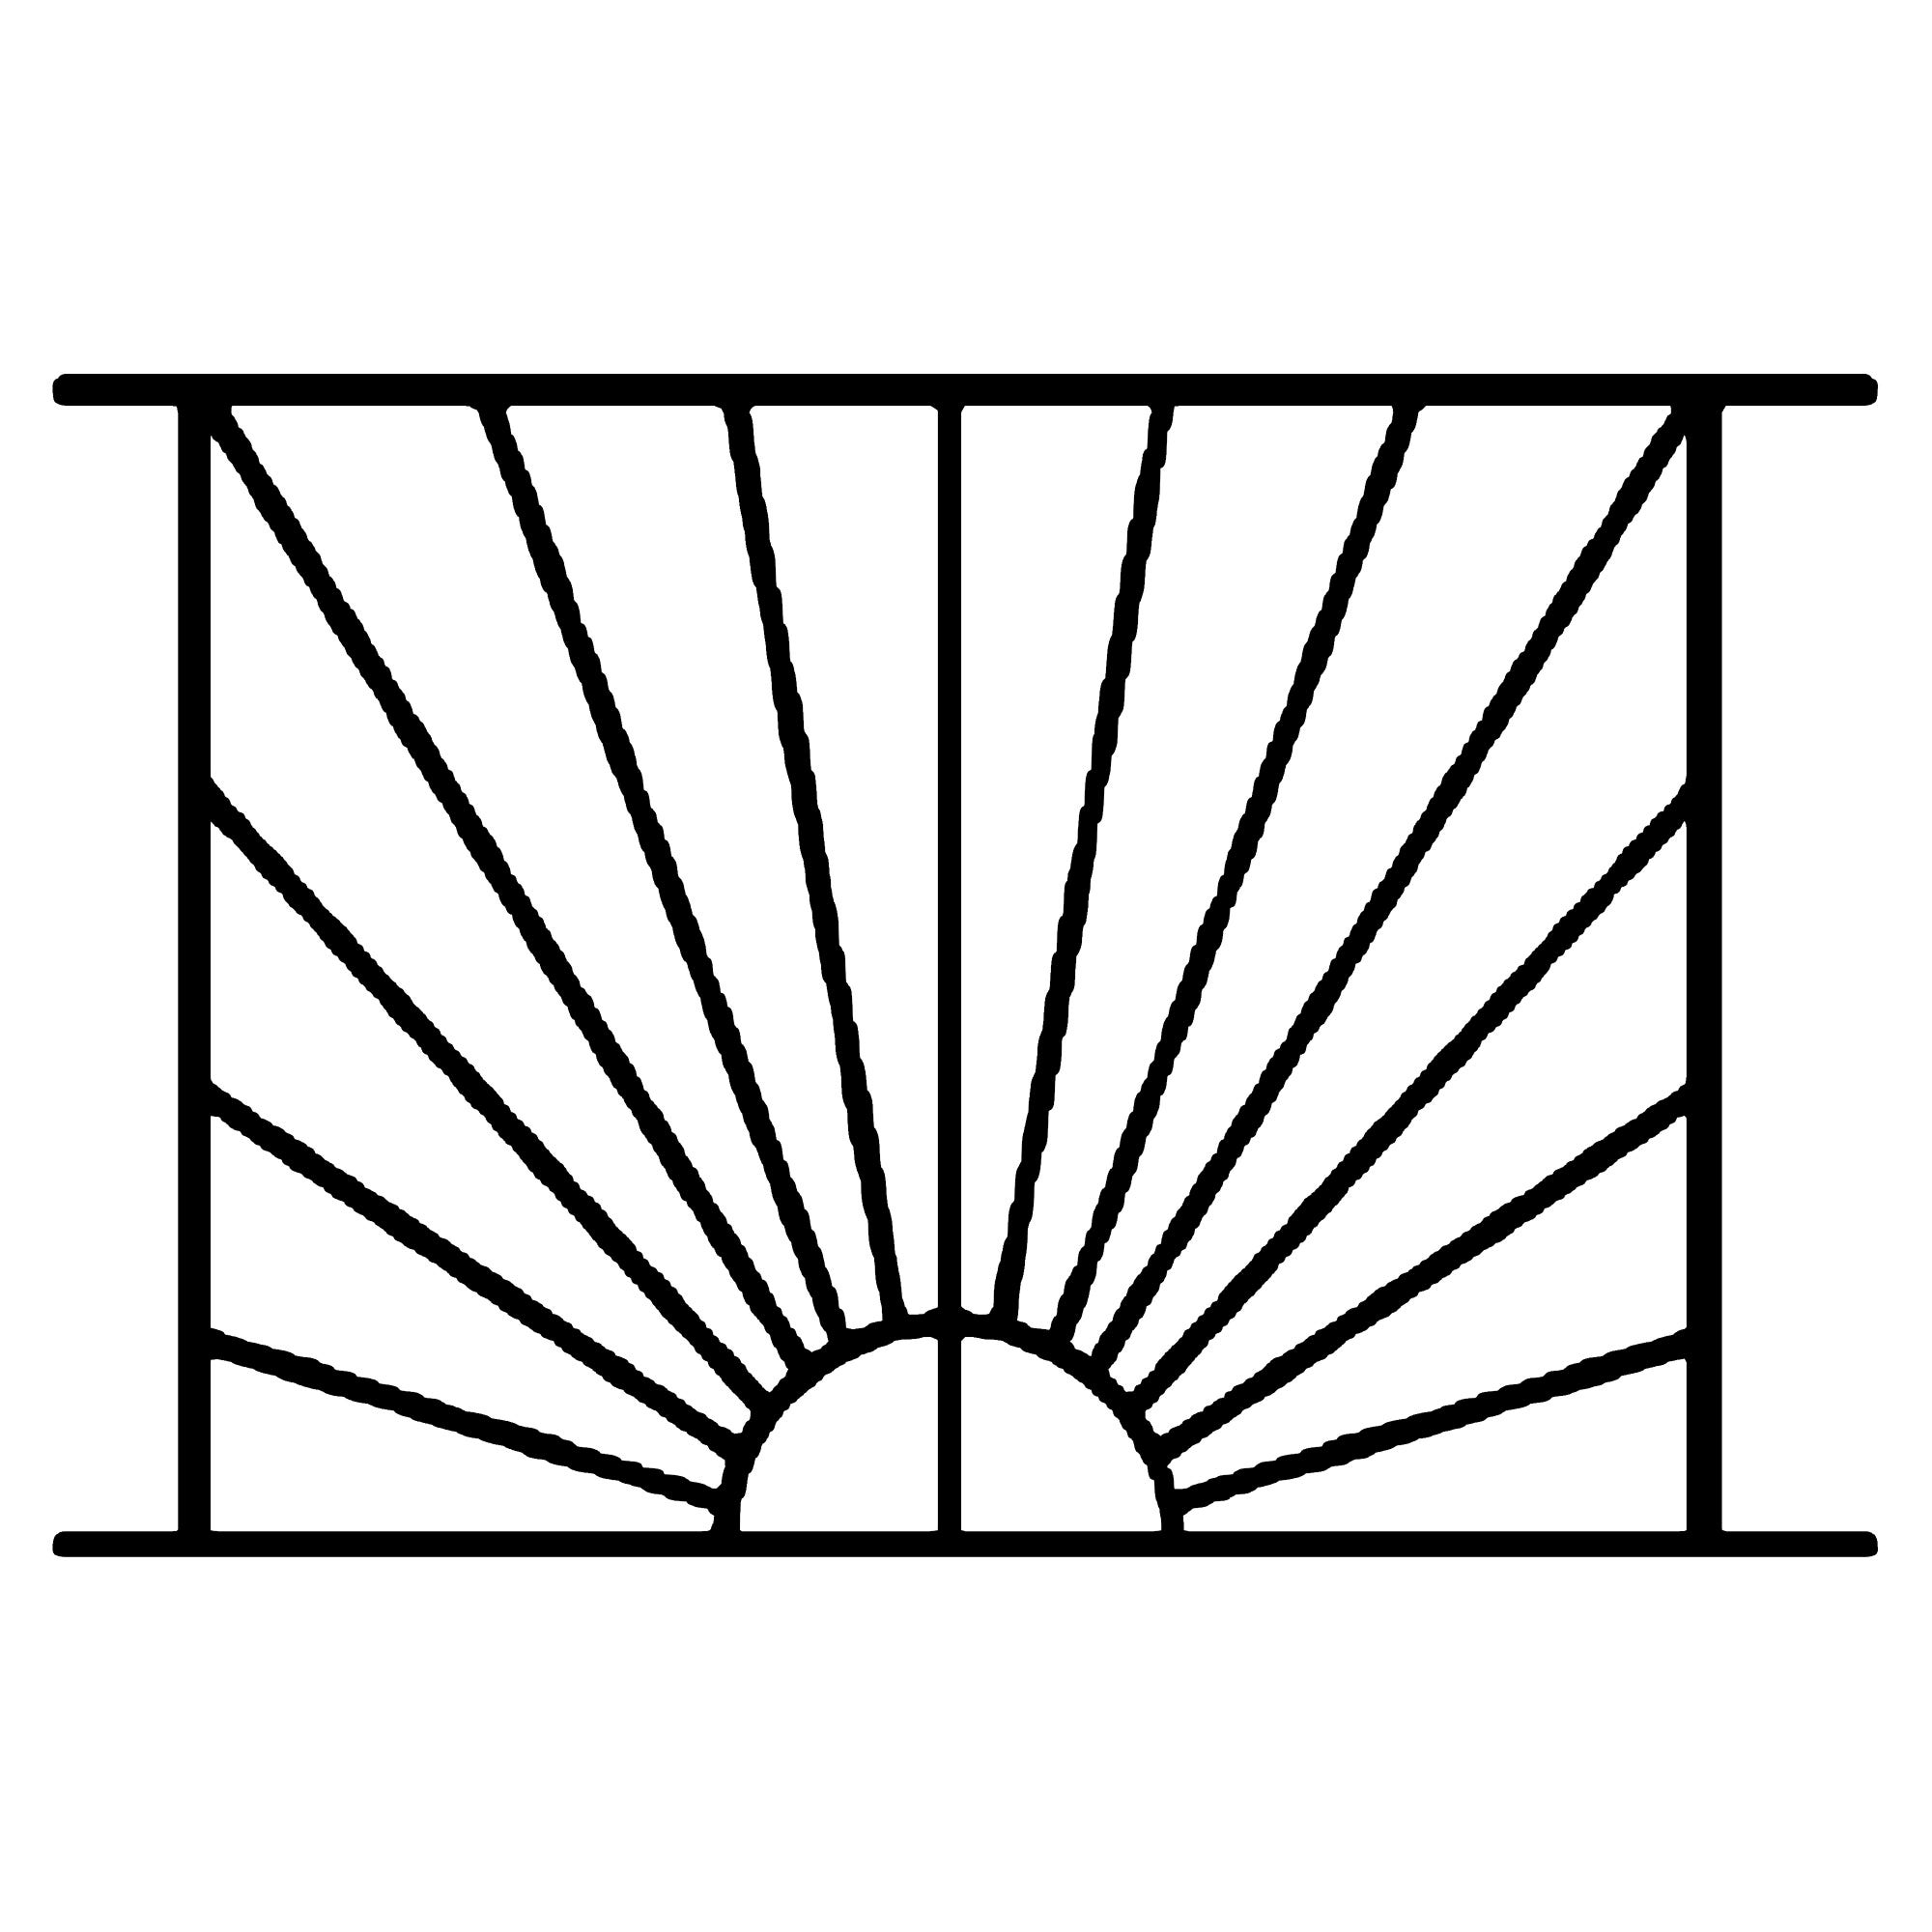 Grille de Defense Soleil pour Fenetre H= 95 cm x L= 140 cm (côte tableau) 1